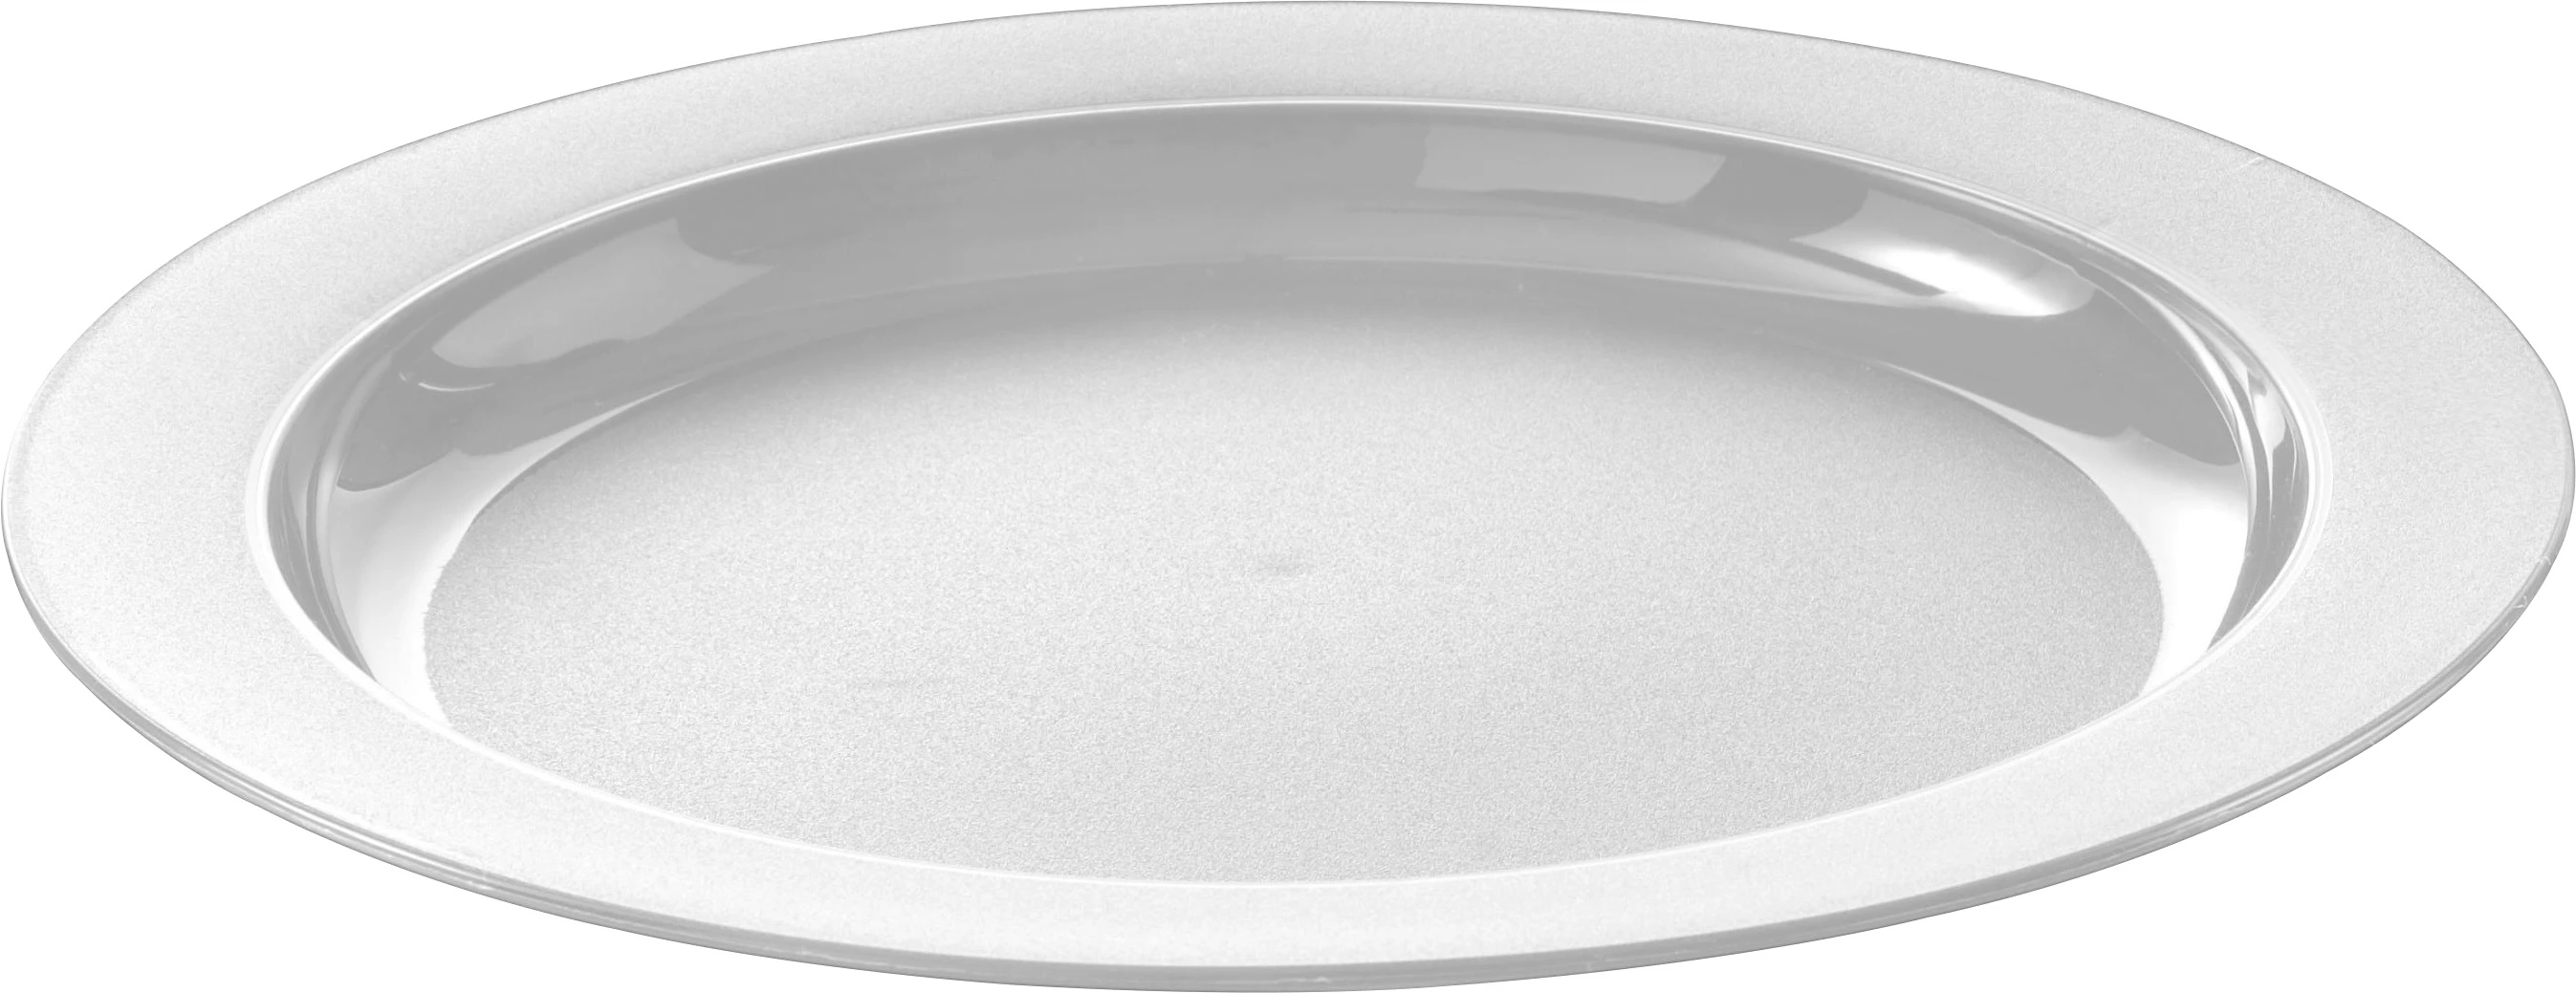 Orthex GastroMax BIO tallerken, hvid, bioplast, ø25 cm